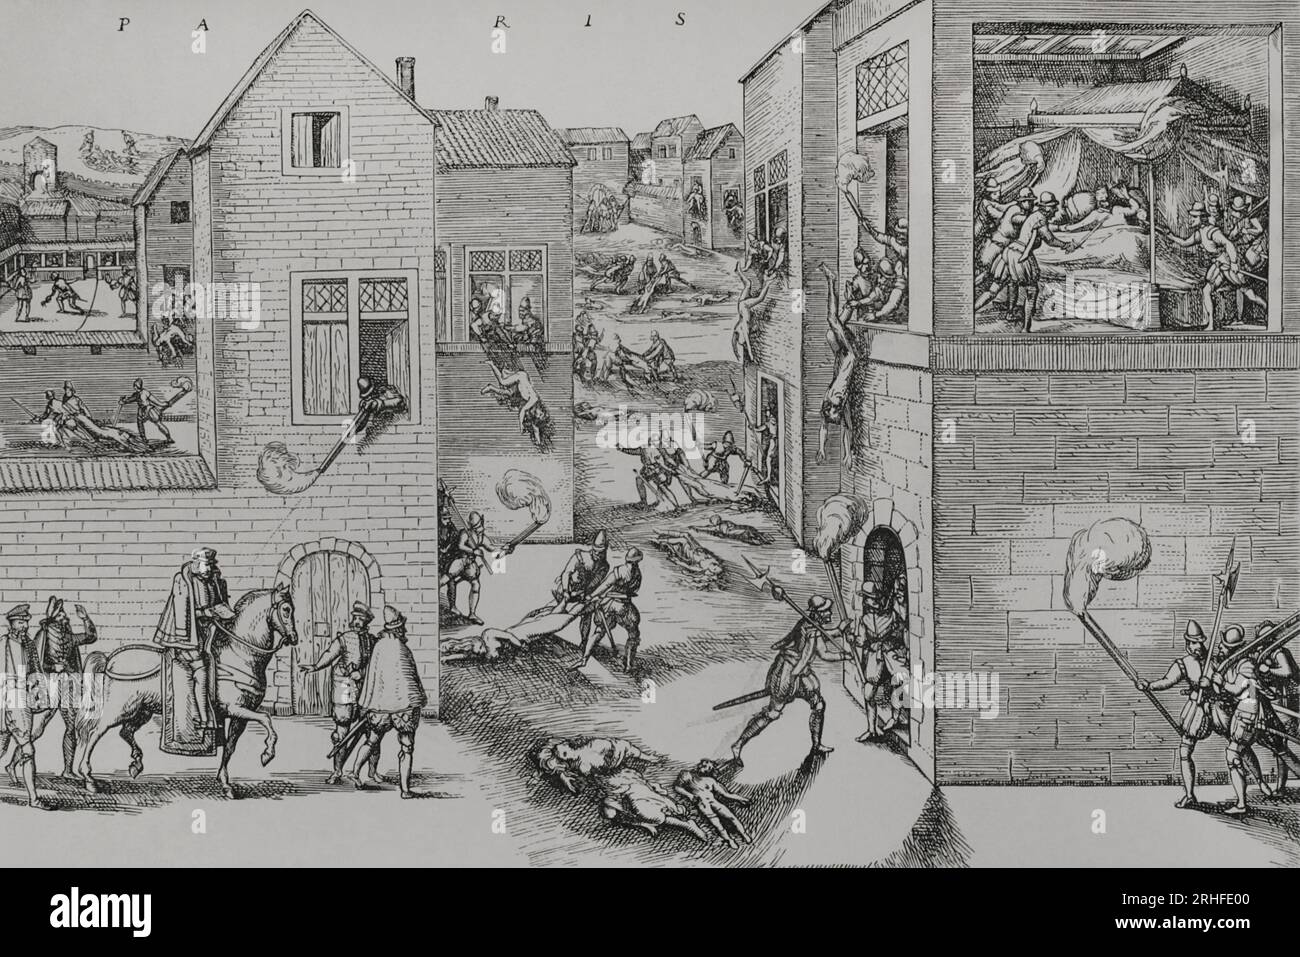 Attentatsversuch auf Gaspar de Coligny (1519-1572) durch einen Anschlag am 22. August 1572. Es war der Auslöser für das Massaker von St. Bartholomäus-Tag in Paris in der Nacht vom 23. Bis 24. August 1572. Eine Gravur aus dem 19. Jahrhundert nach einem deutschen Original, die eines der zusätzlichen Blätter der Sammlung darstellt, die von Jean Tortorel und Jacques Perrissin graviert wurden. Unten links ist der Angriff gegen Coligny durch Arquebus-Feuer dargestellt, ausgeführt von Maurevert von einem Fenster aus, und sein Tod während der Schlachtung. Coligny wurde in seinem Haus von Besme getötet, einem der deutschen Offiziere von Herzog Henri de Guise. H Stockfoto